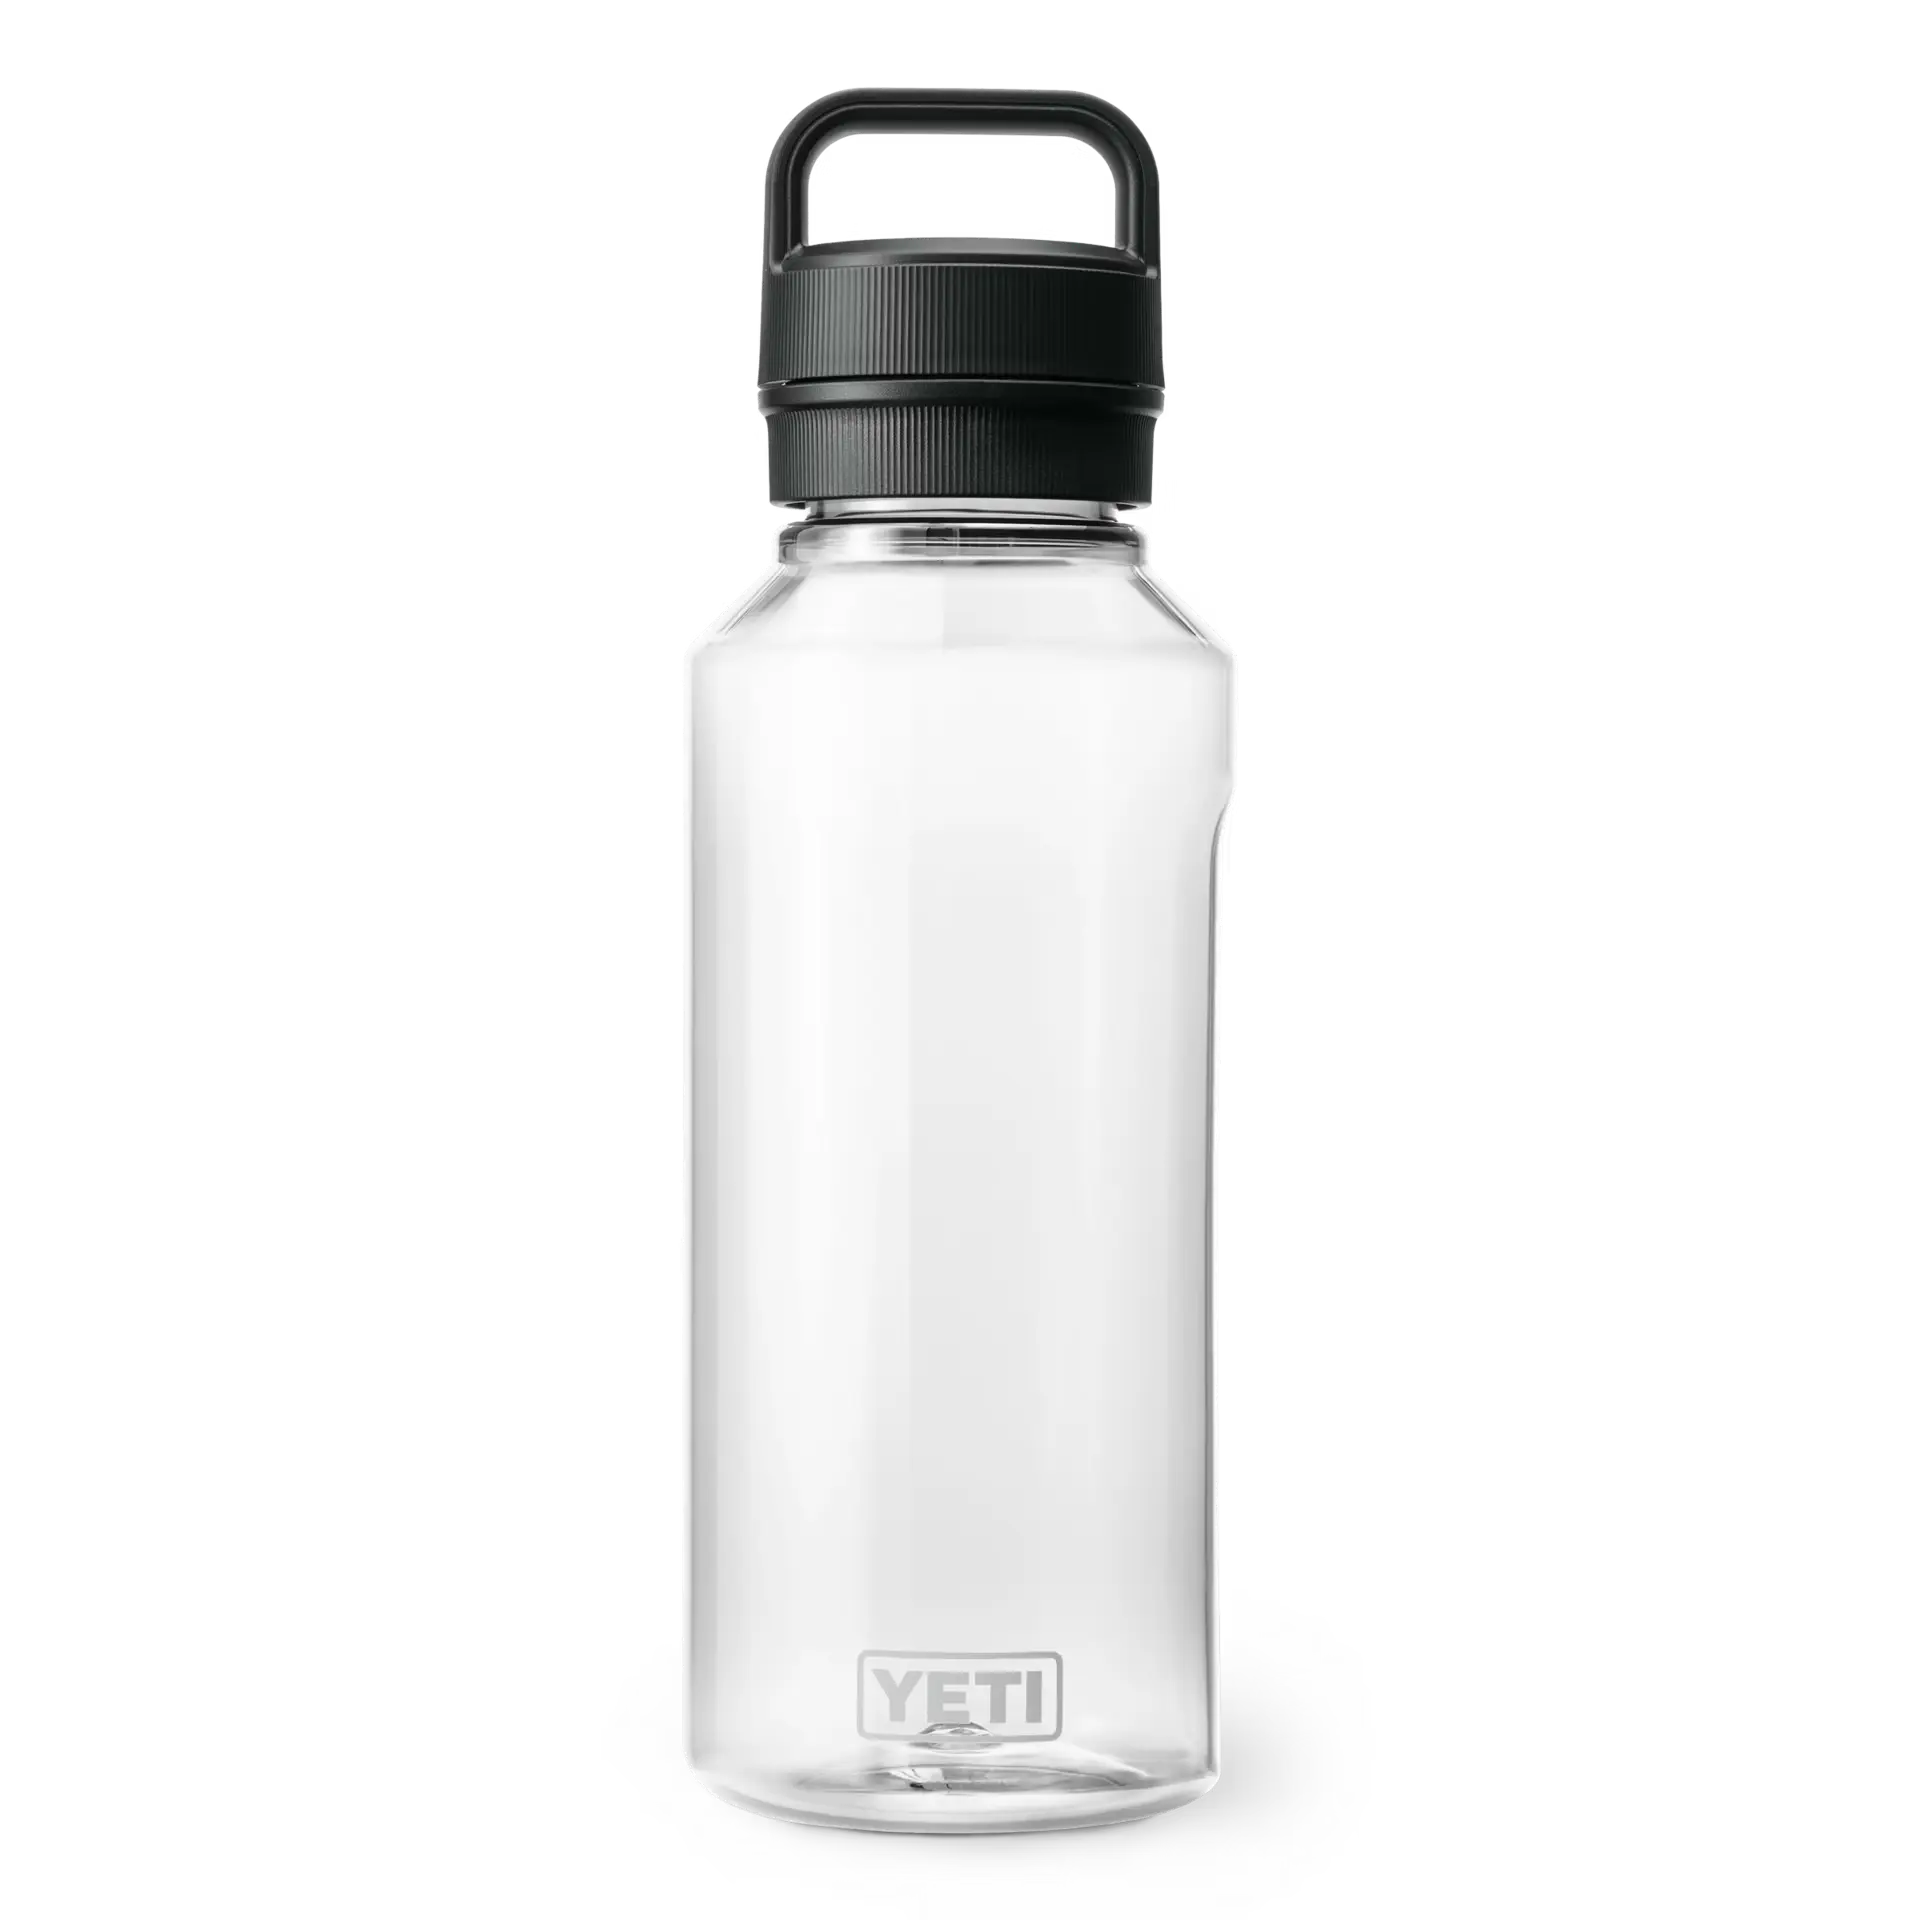 A Clear YETI Yonder bottle 50 oz.